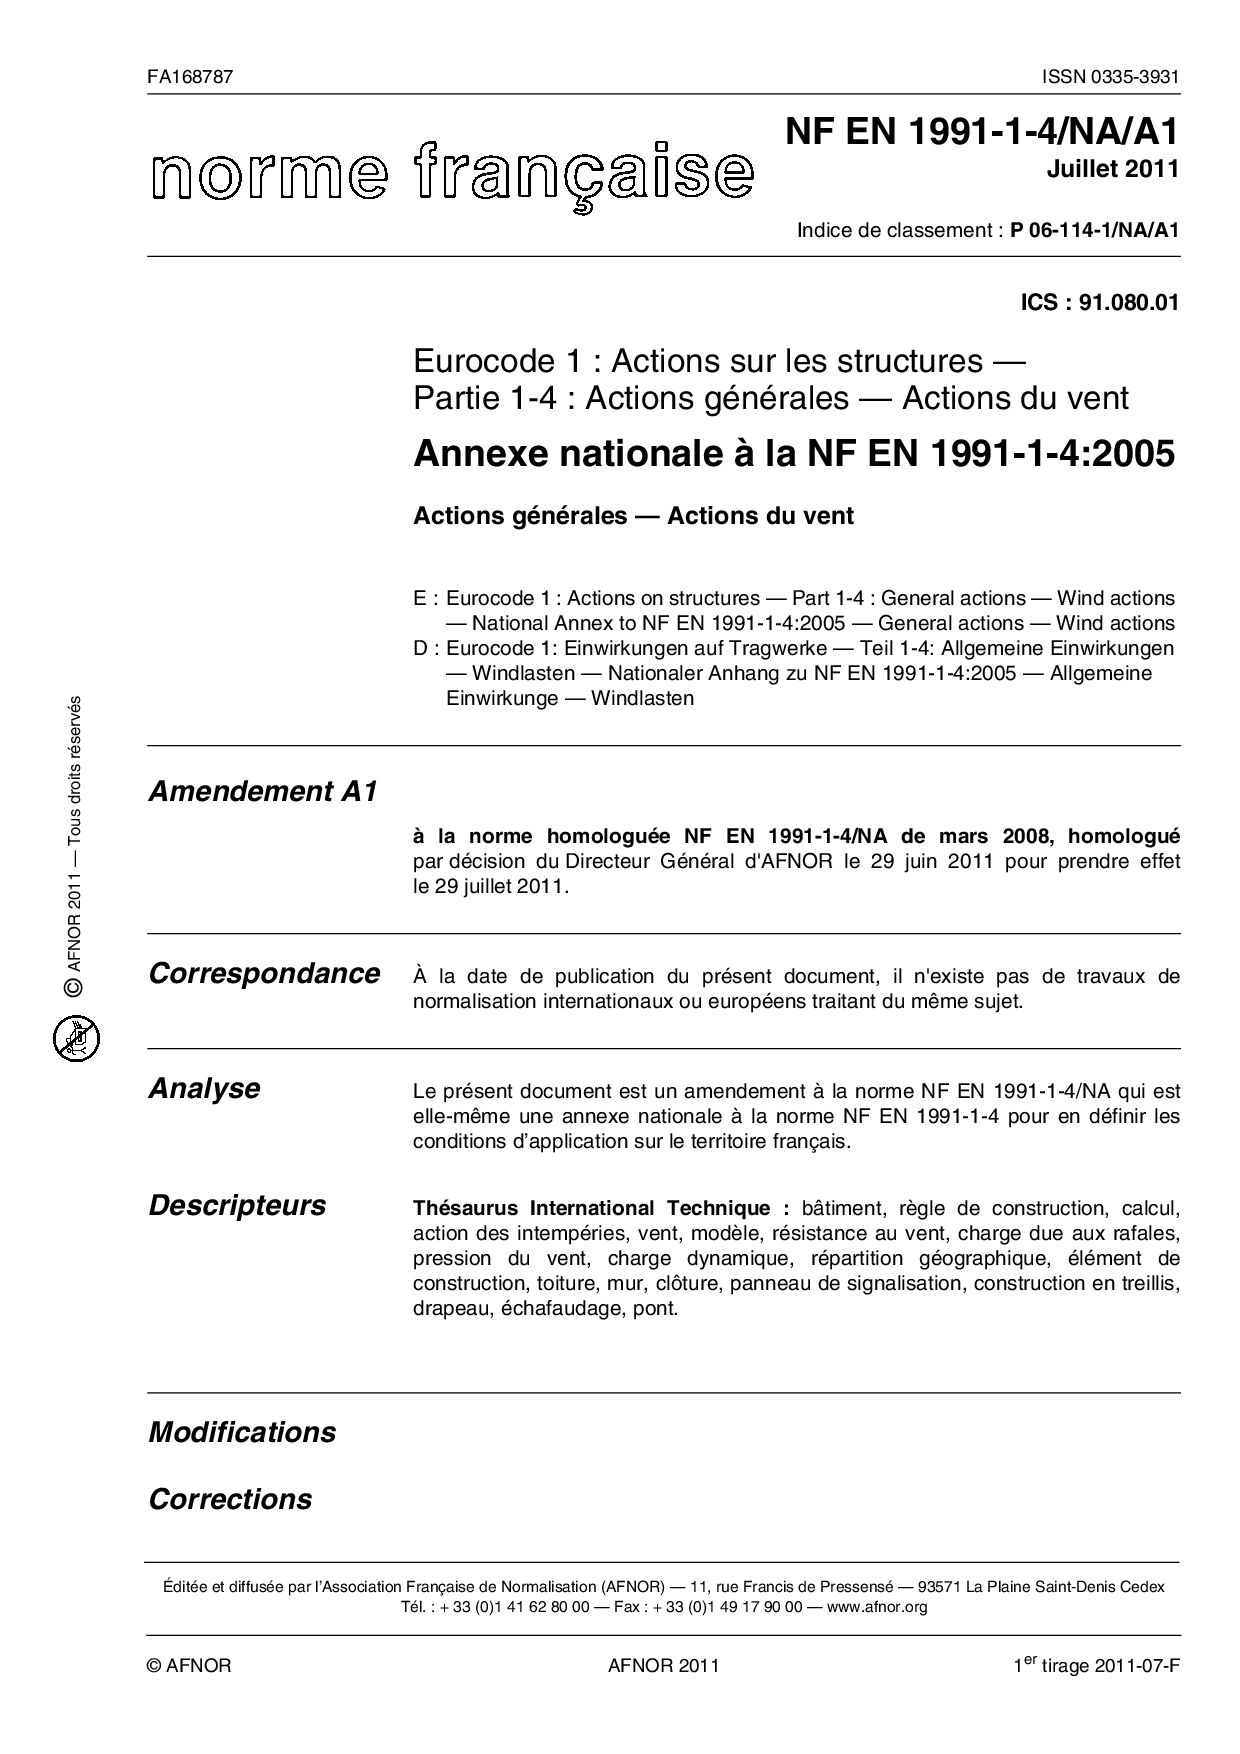 NF EN 1991-1-4/NA/A1:2011